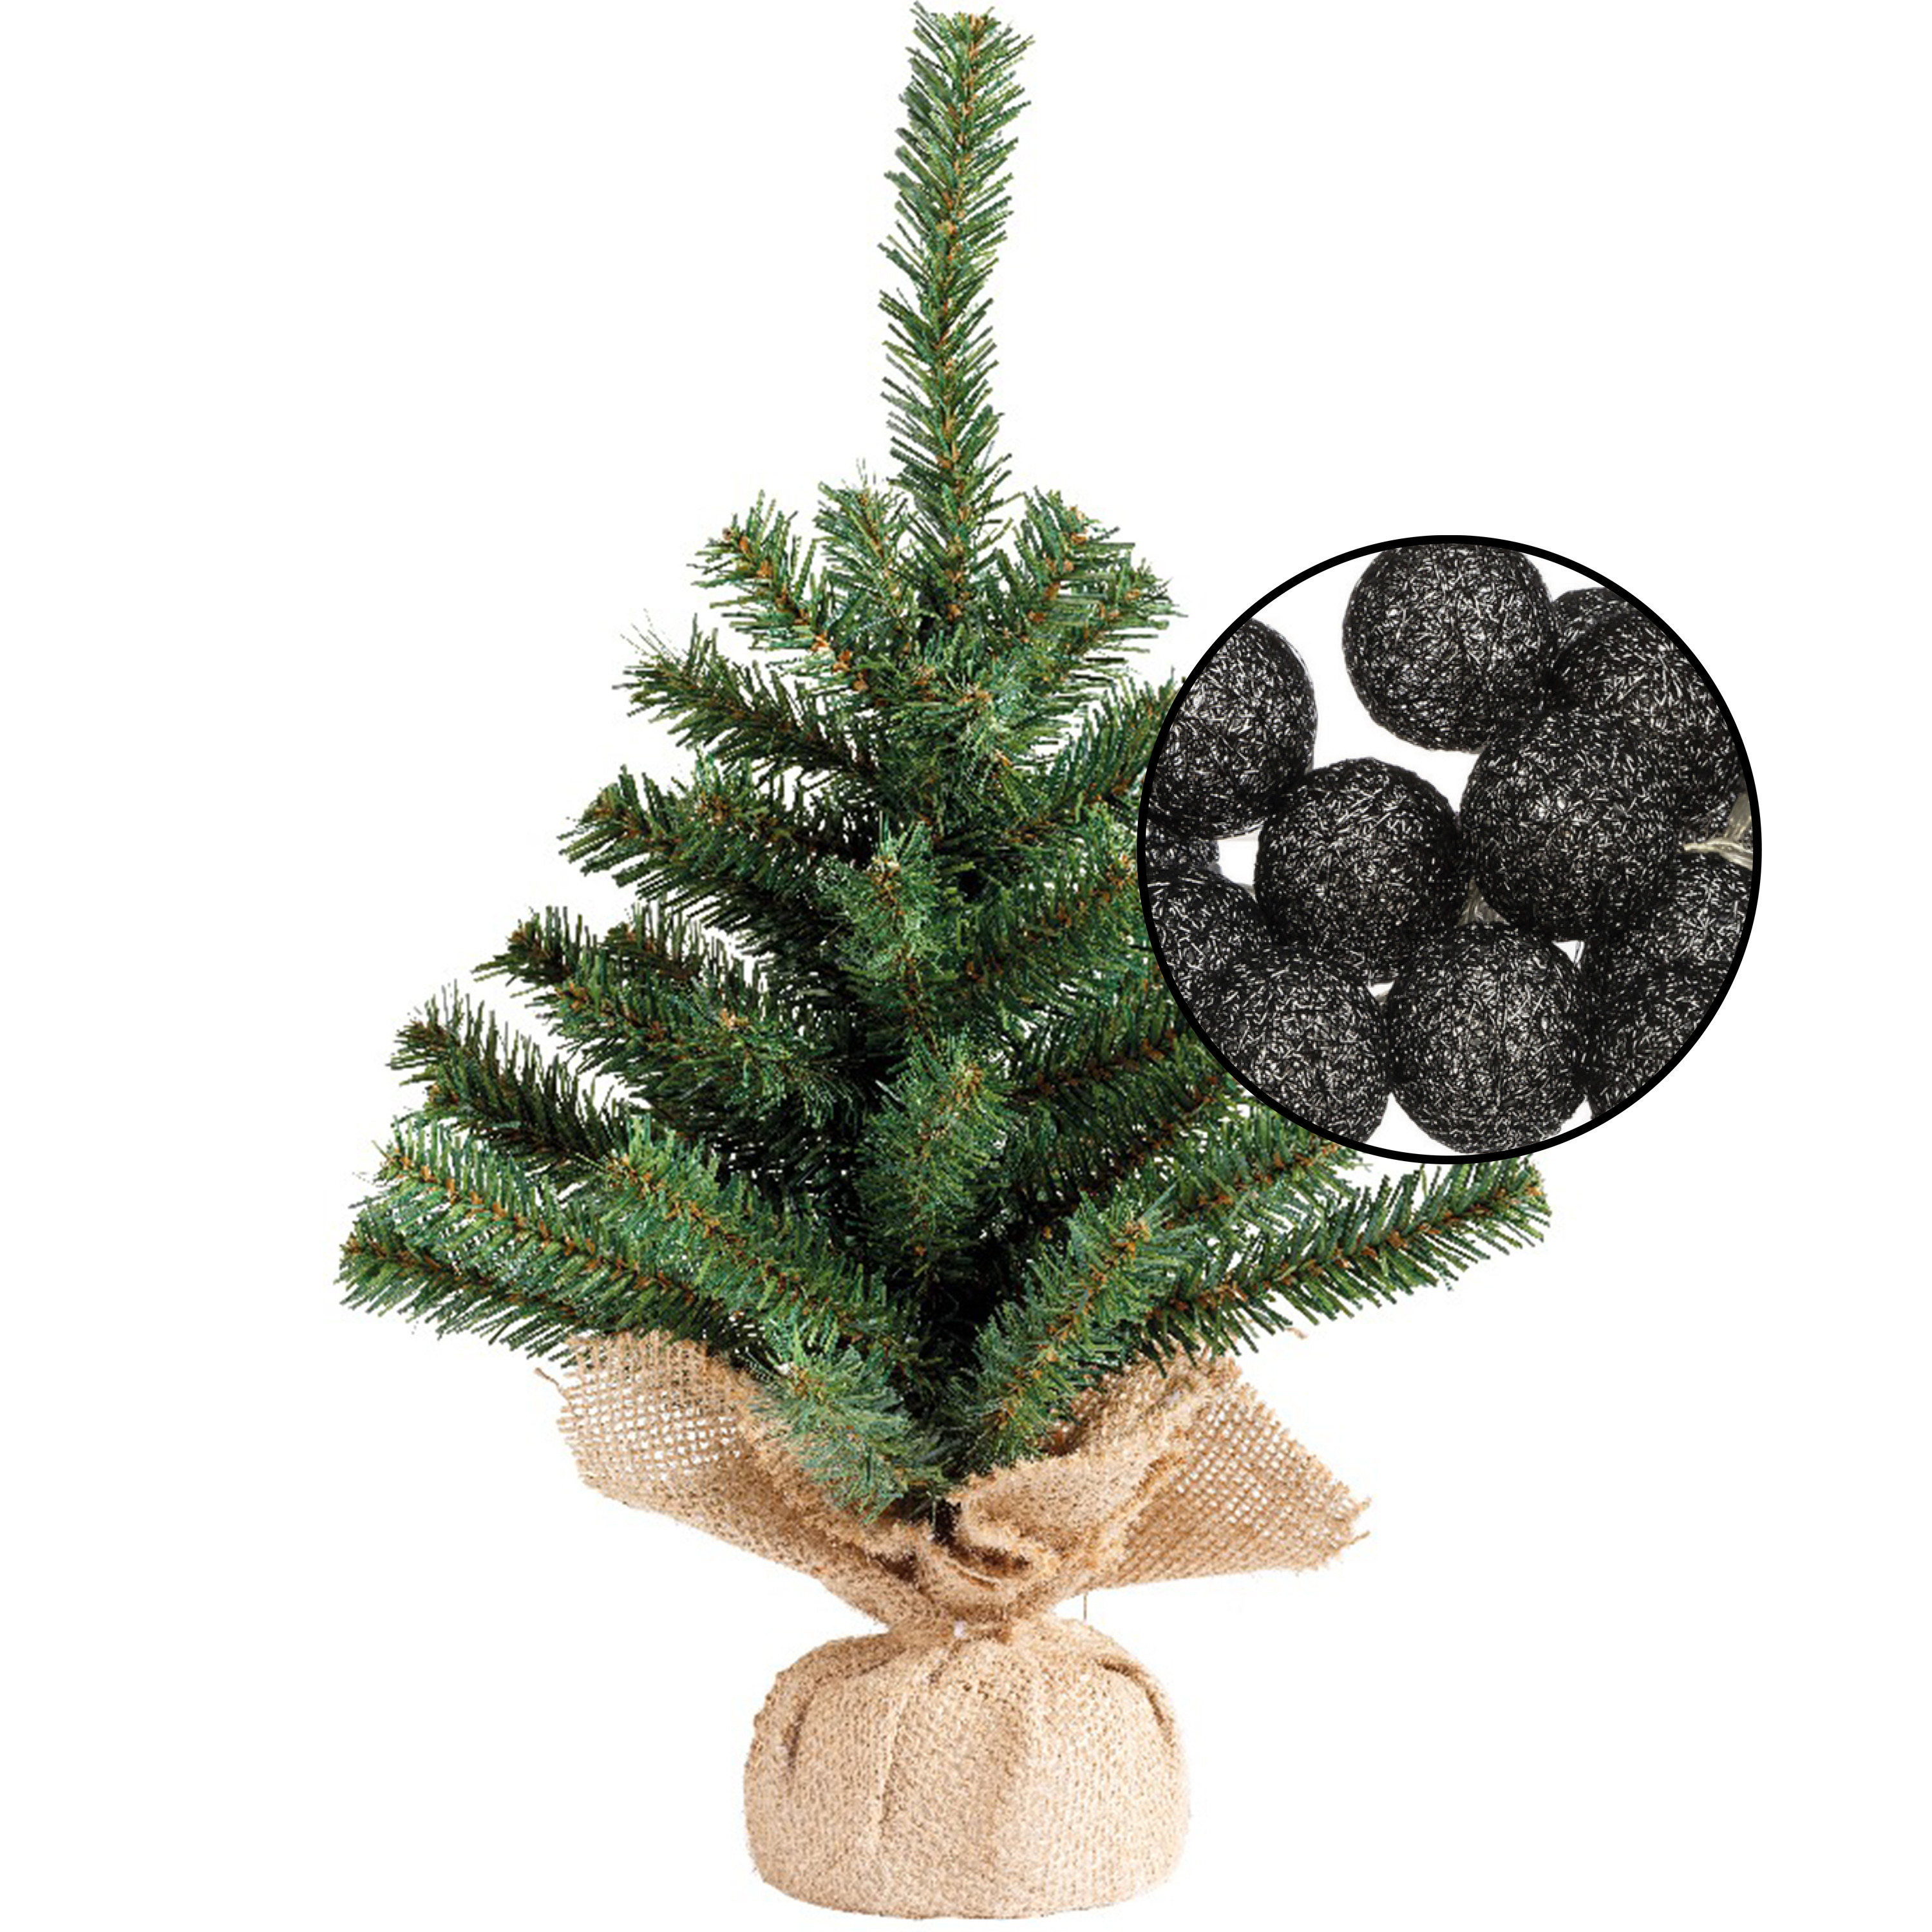 Mini kunst kerstboom groen met verlichting in jute zak H45 cm zwart